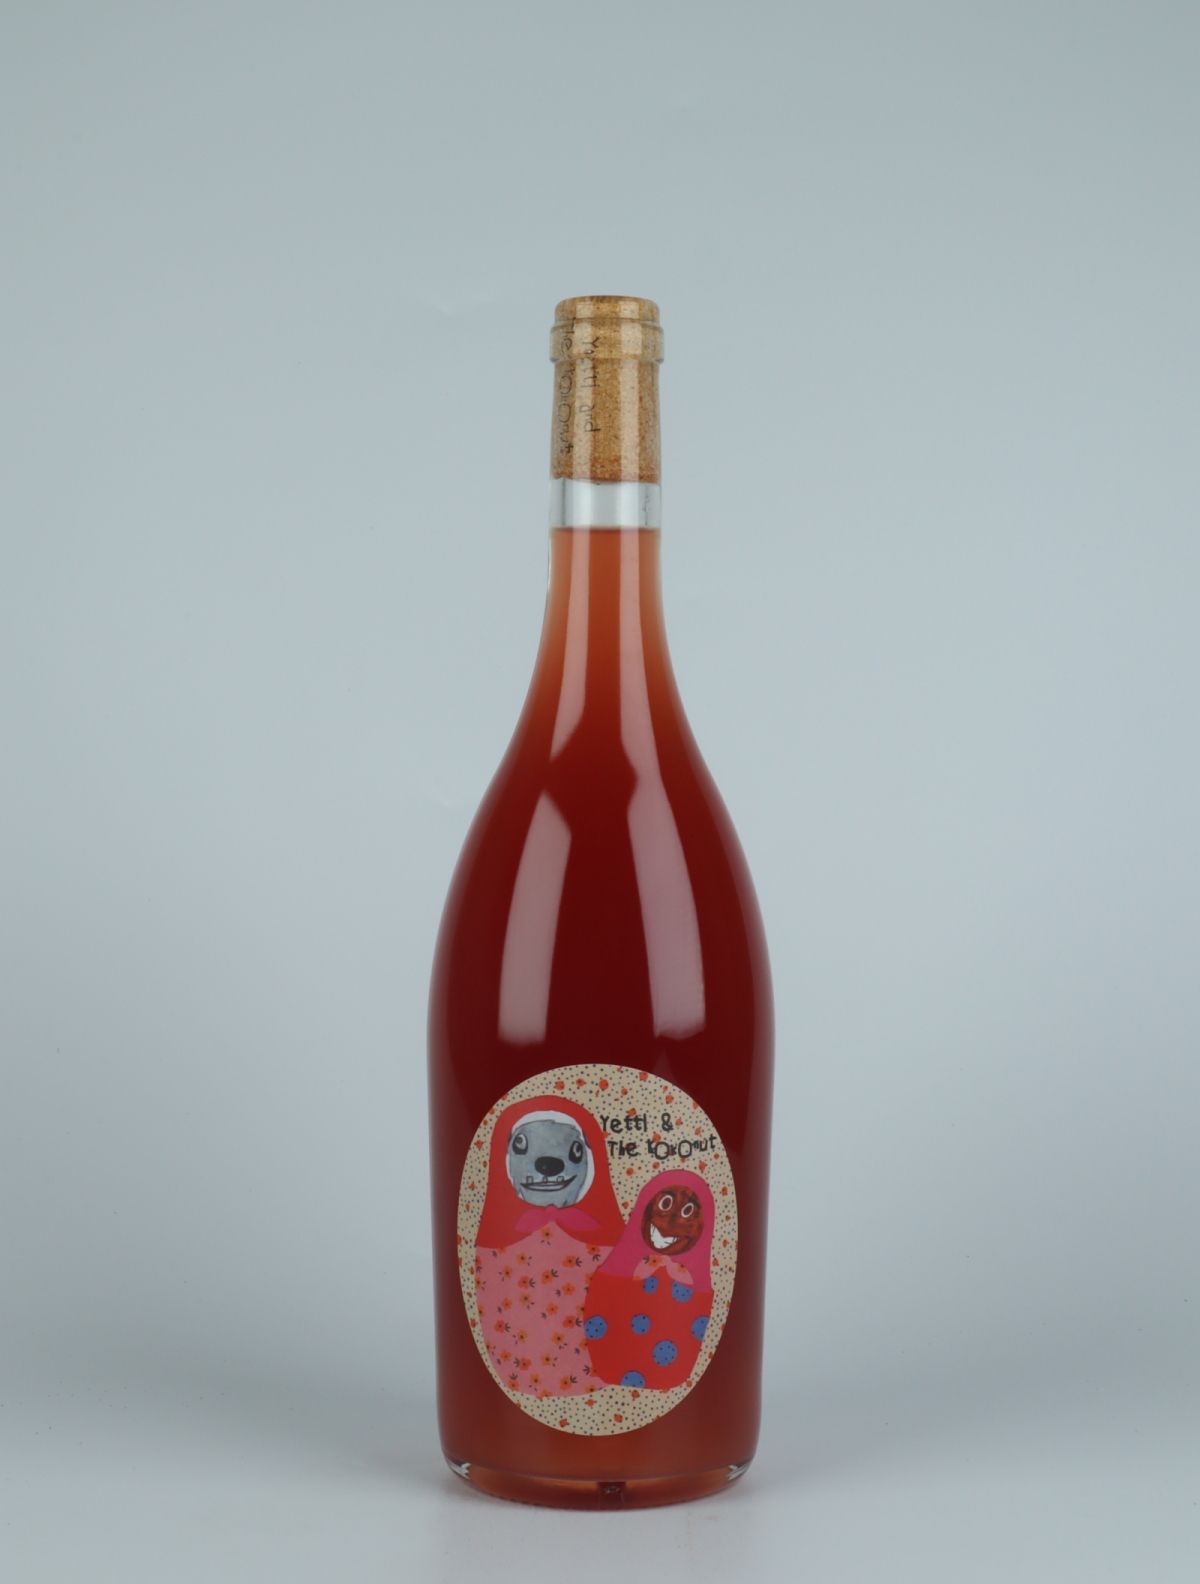 En flaske 2021 Red Muscat Rødvin fra Yetti and the Kokonut, Adelaide Hills i Australien